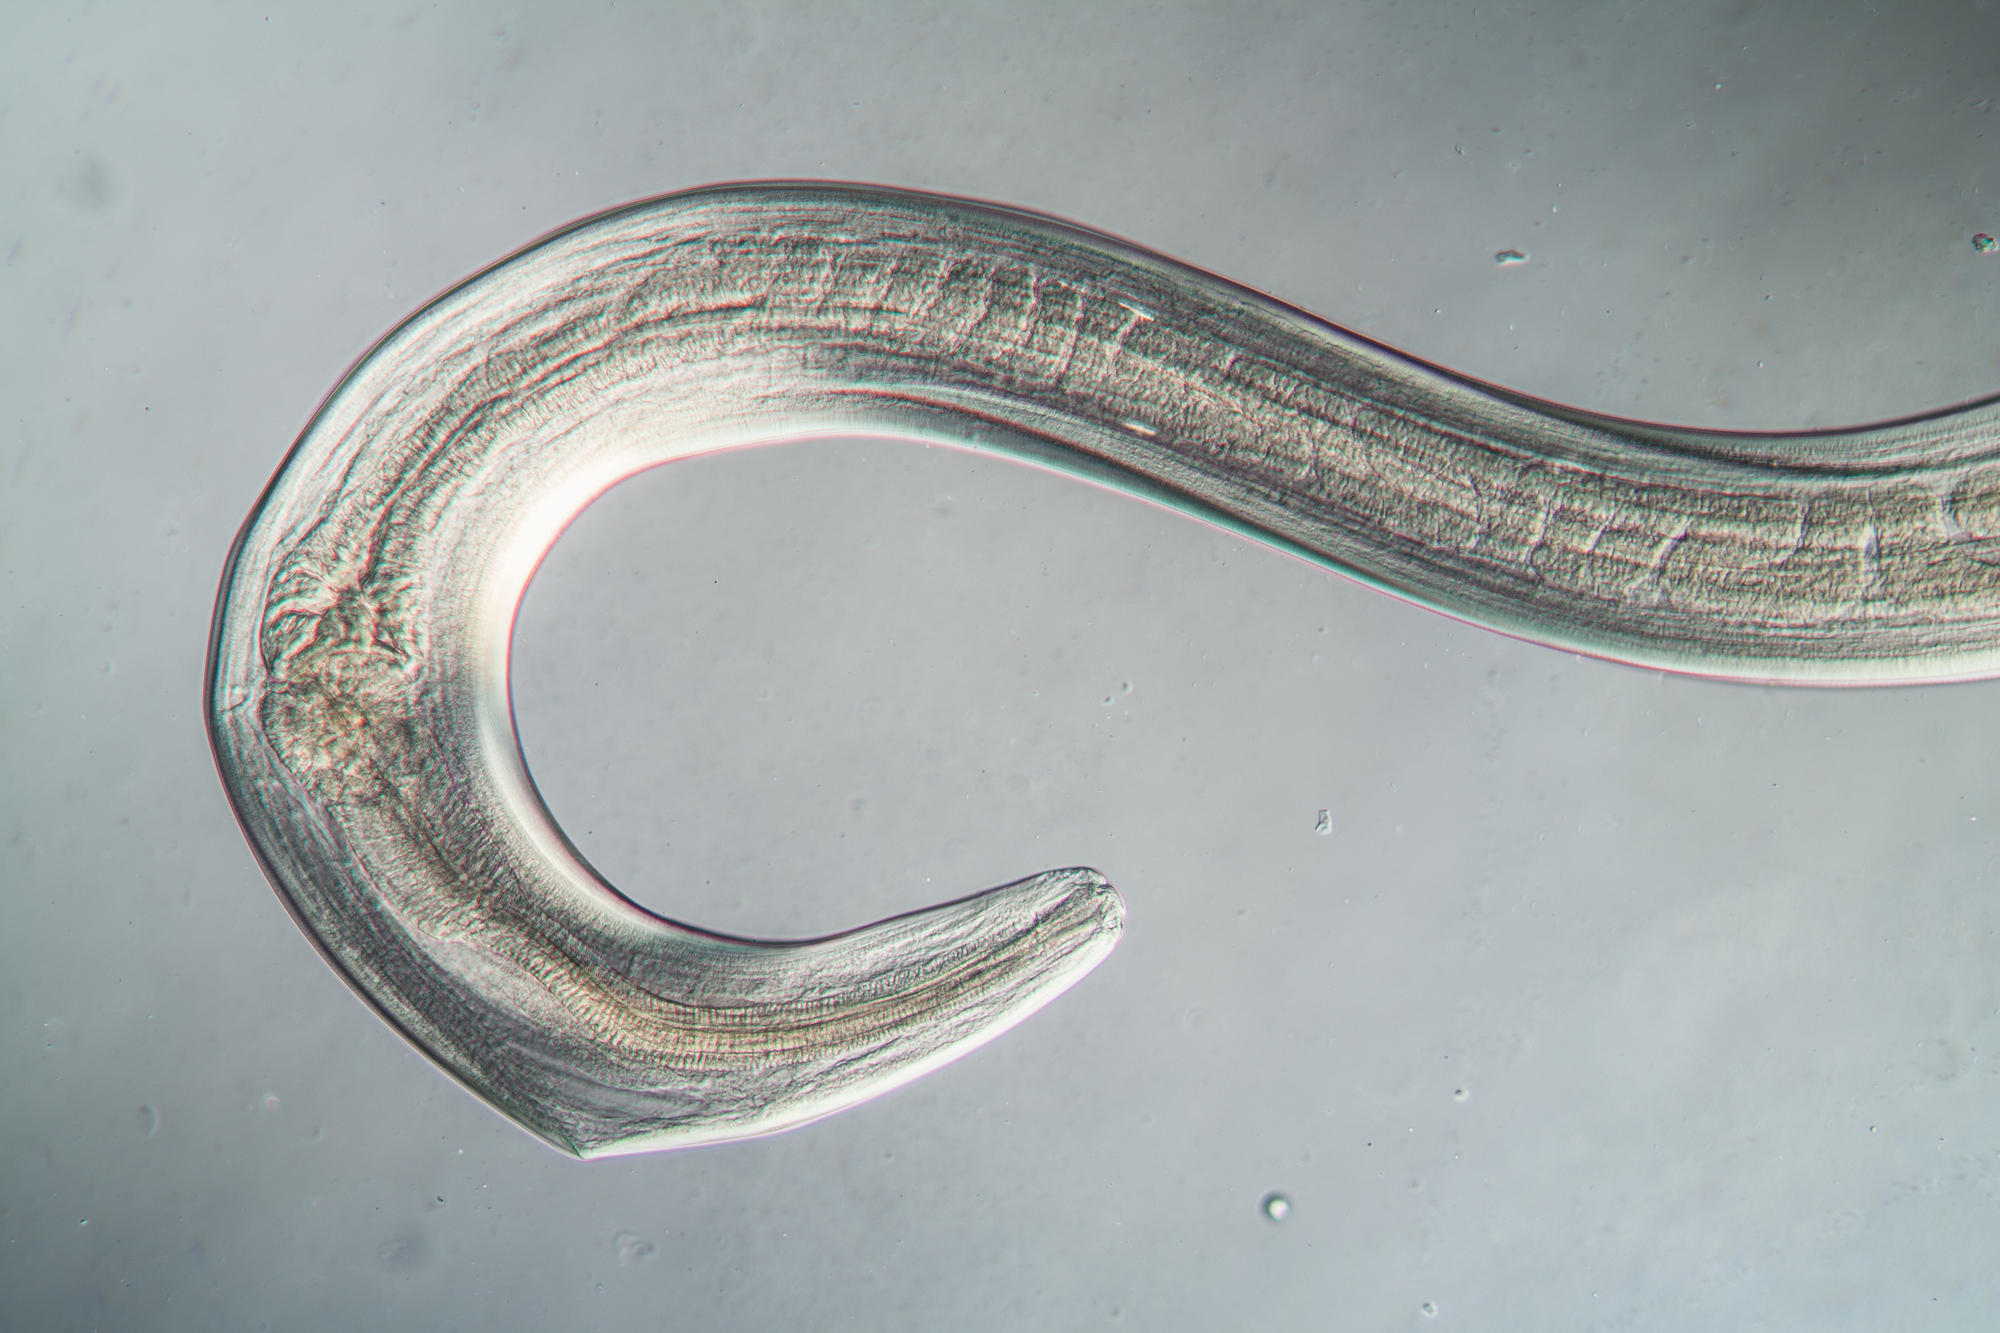 microscopic image of nematode